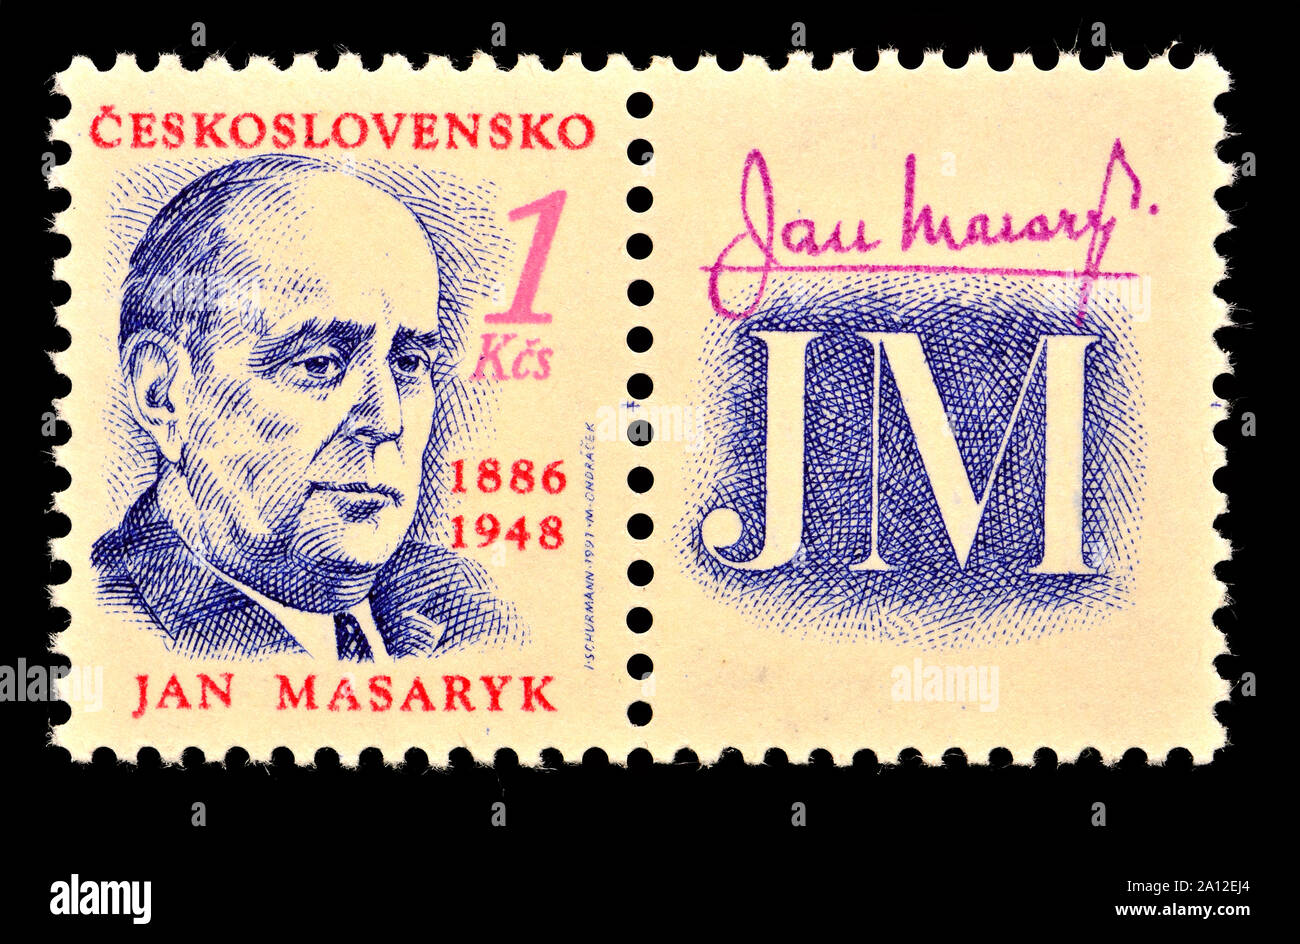 Sellos de Checoslovaquia (1991): Jan Masaryk (1886-1948), político y diplomático Foto de stock